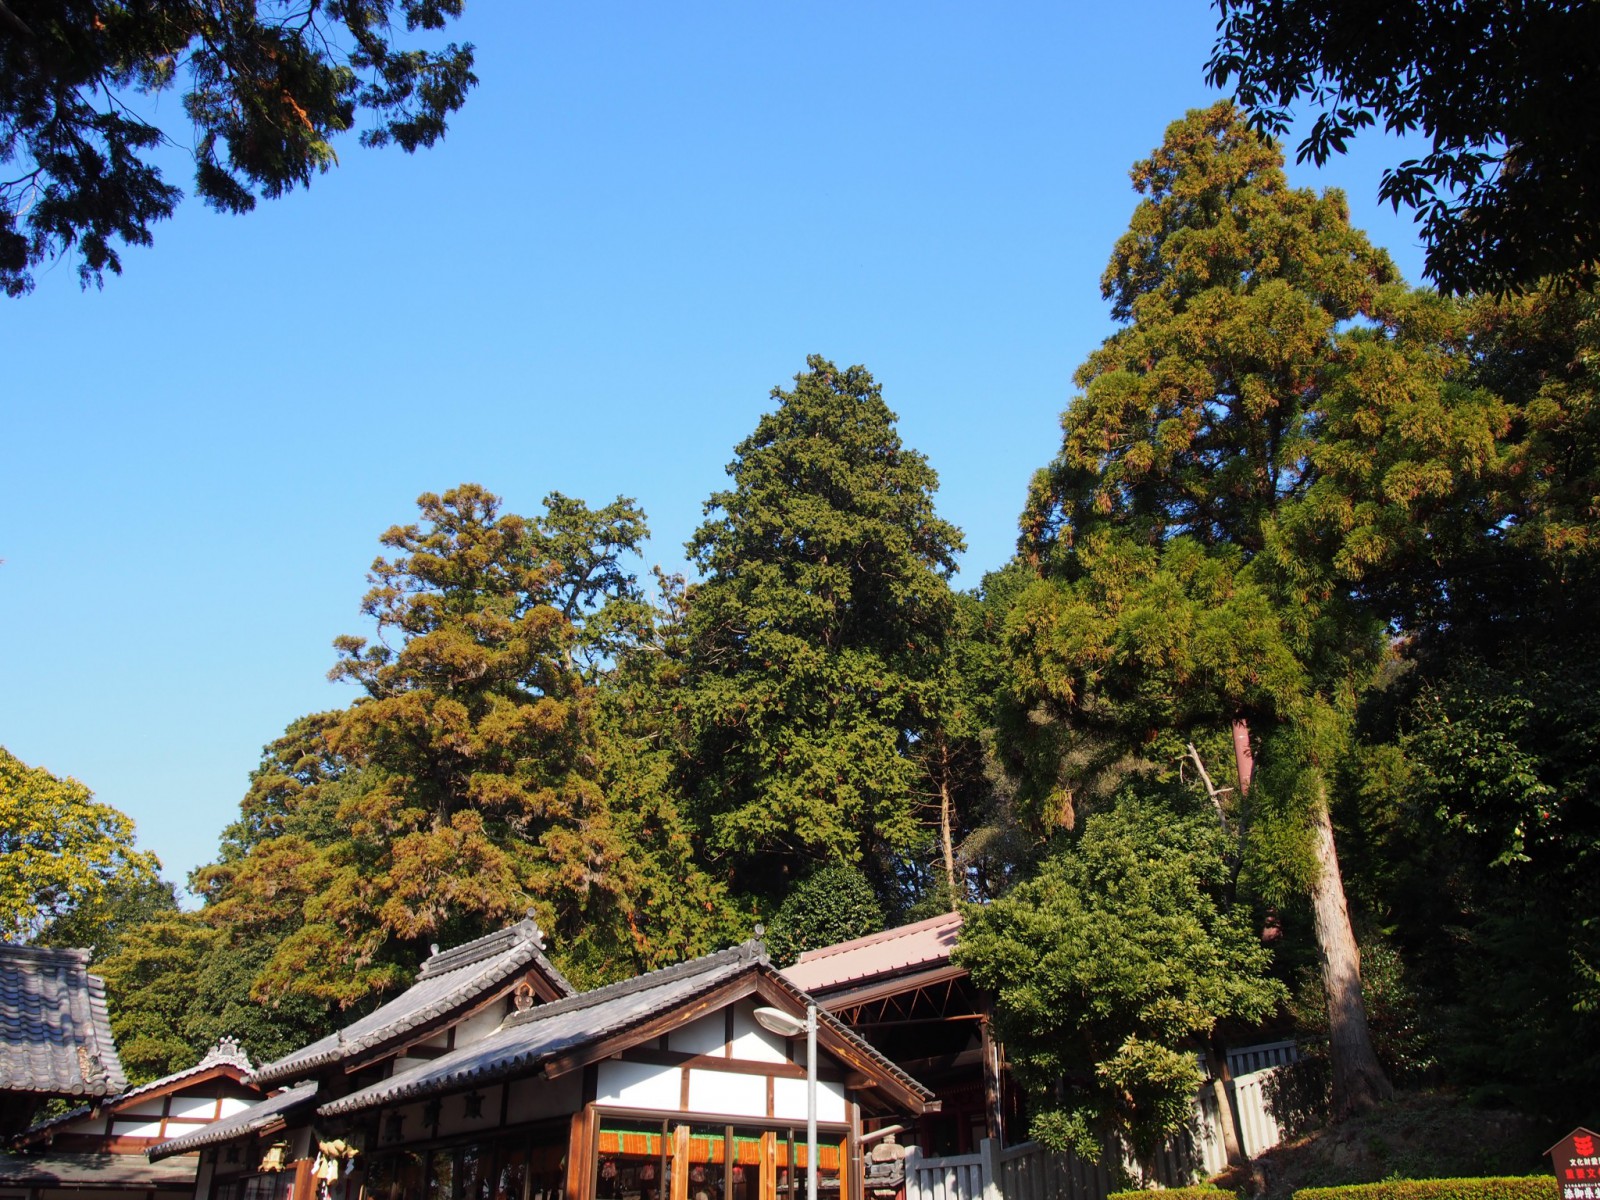 添御県坐神社の社殿